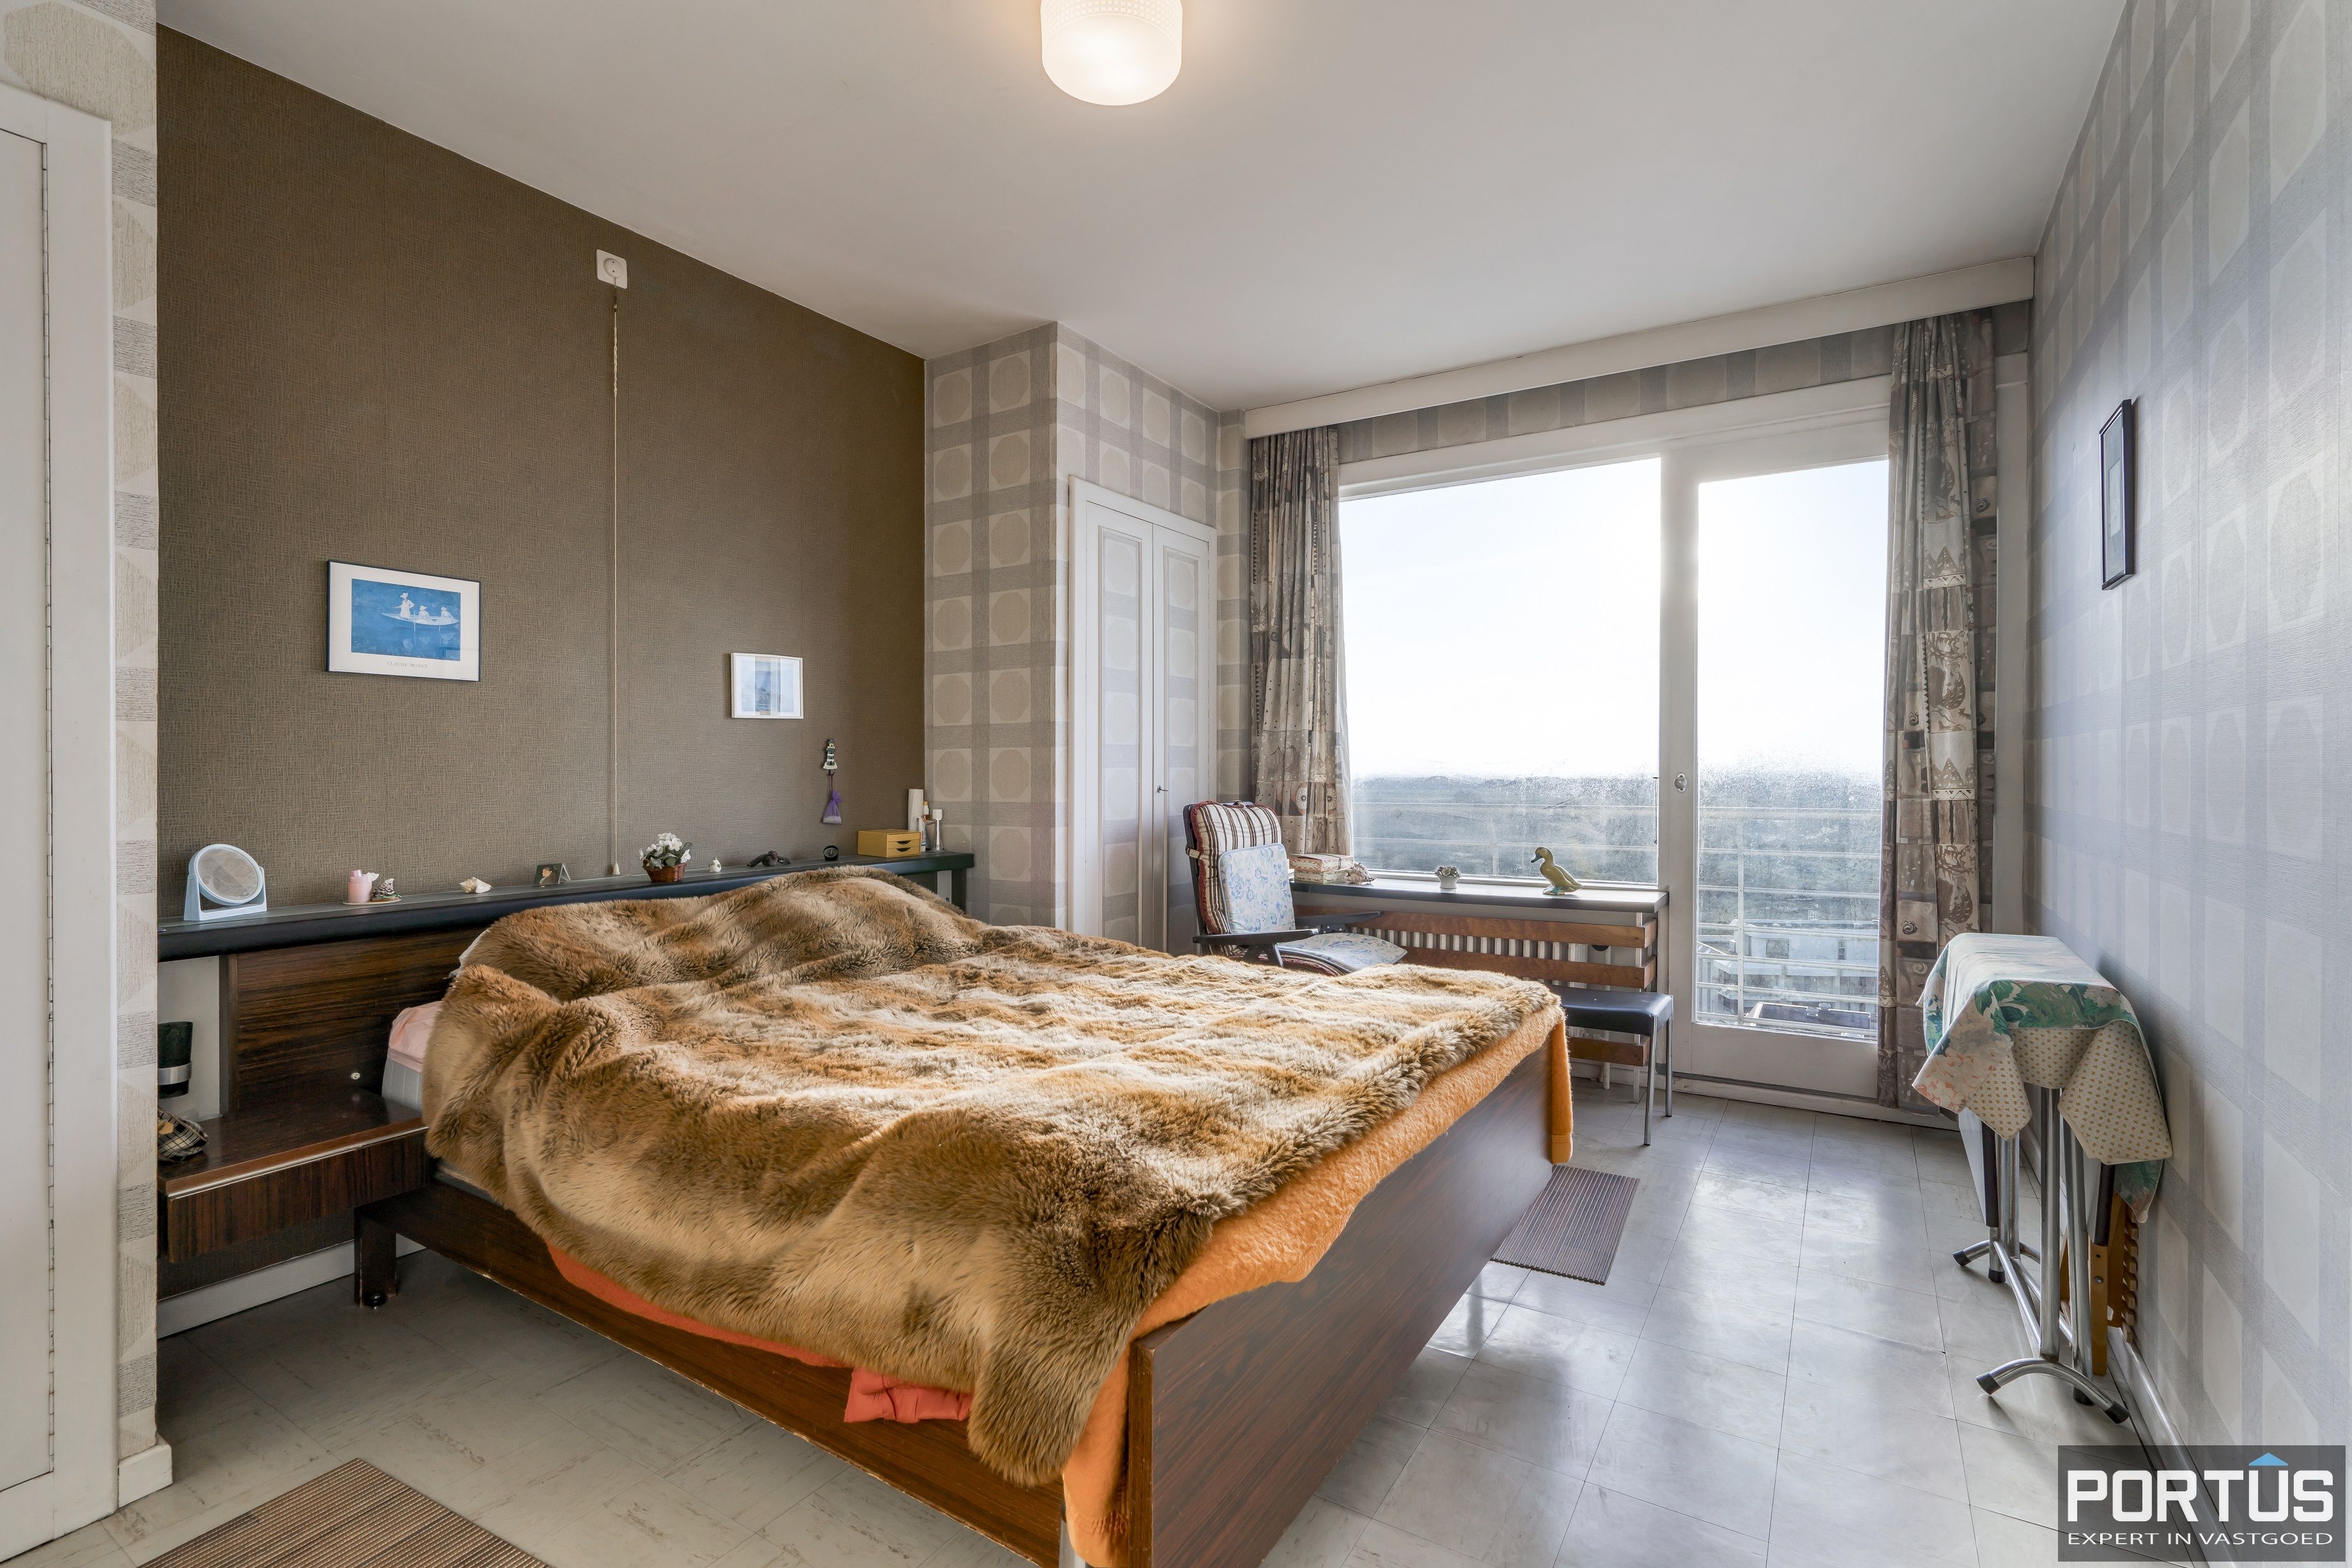 Appartement met 3 slaapkamers en frontaal zeezicht te koop te Nieuwpoort-Bad - 14249